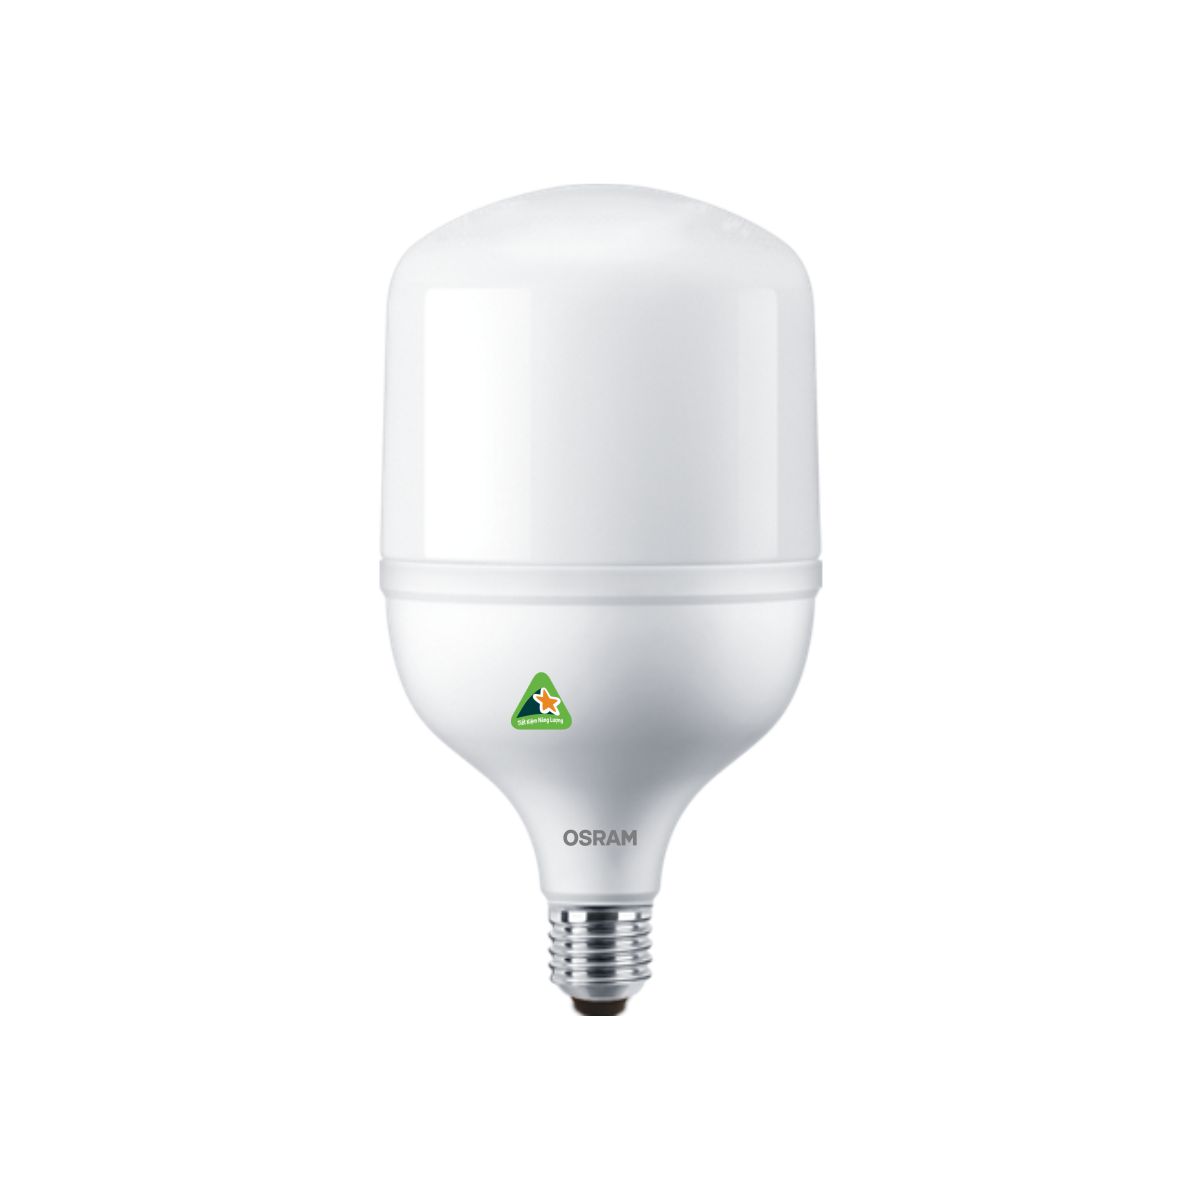 Bóng đèn LED trụ T-Bulb OSRAM E27 - Hiệu suất cao, chất lượng ánh sáng vượt trội